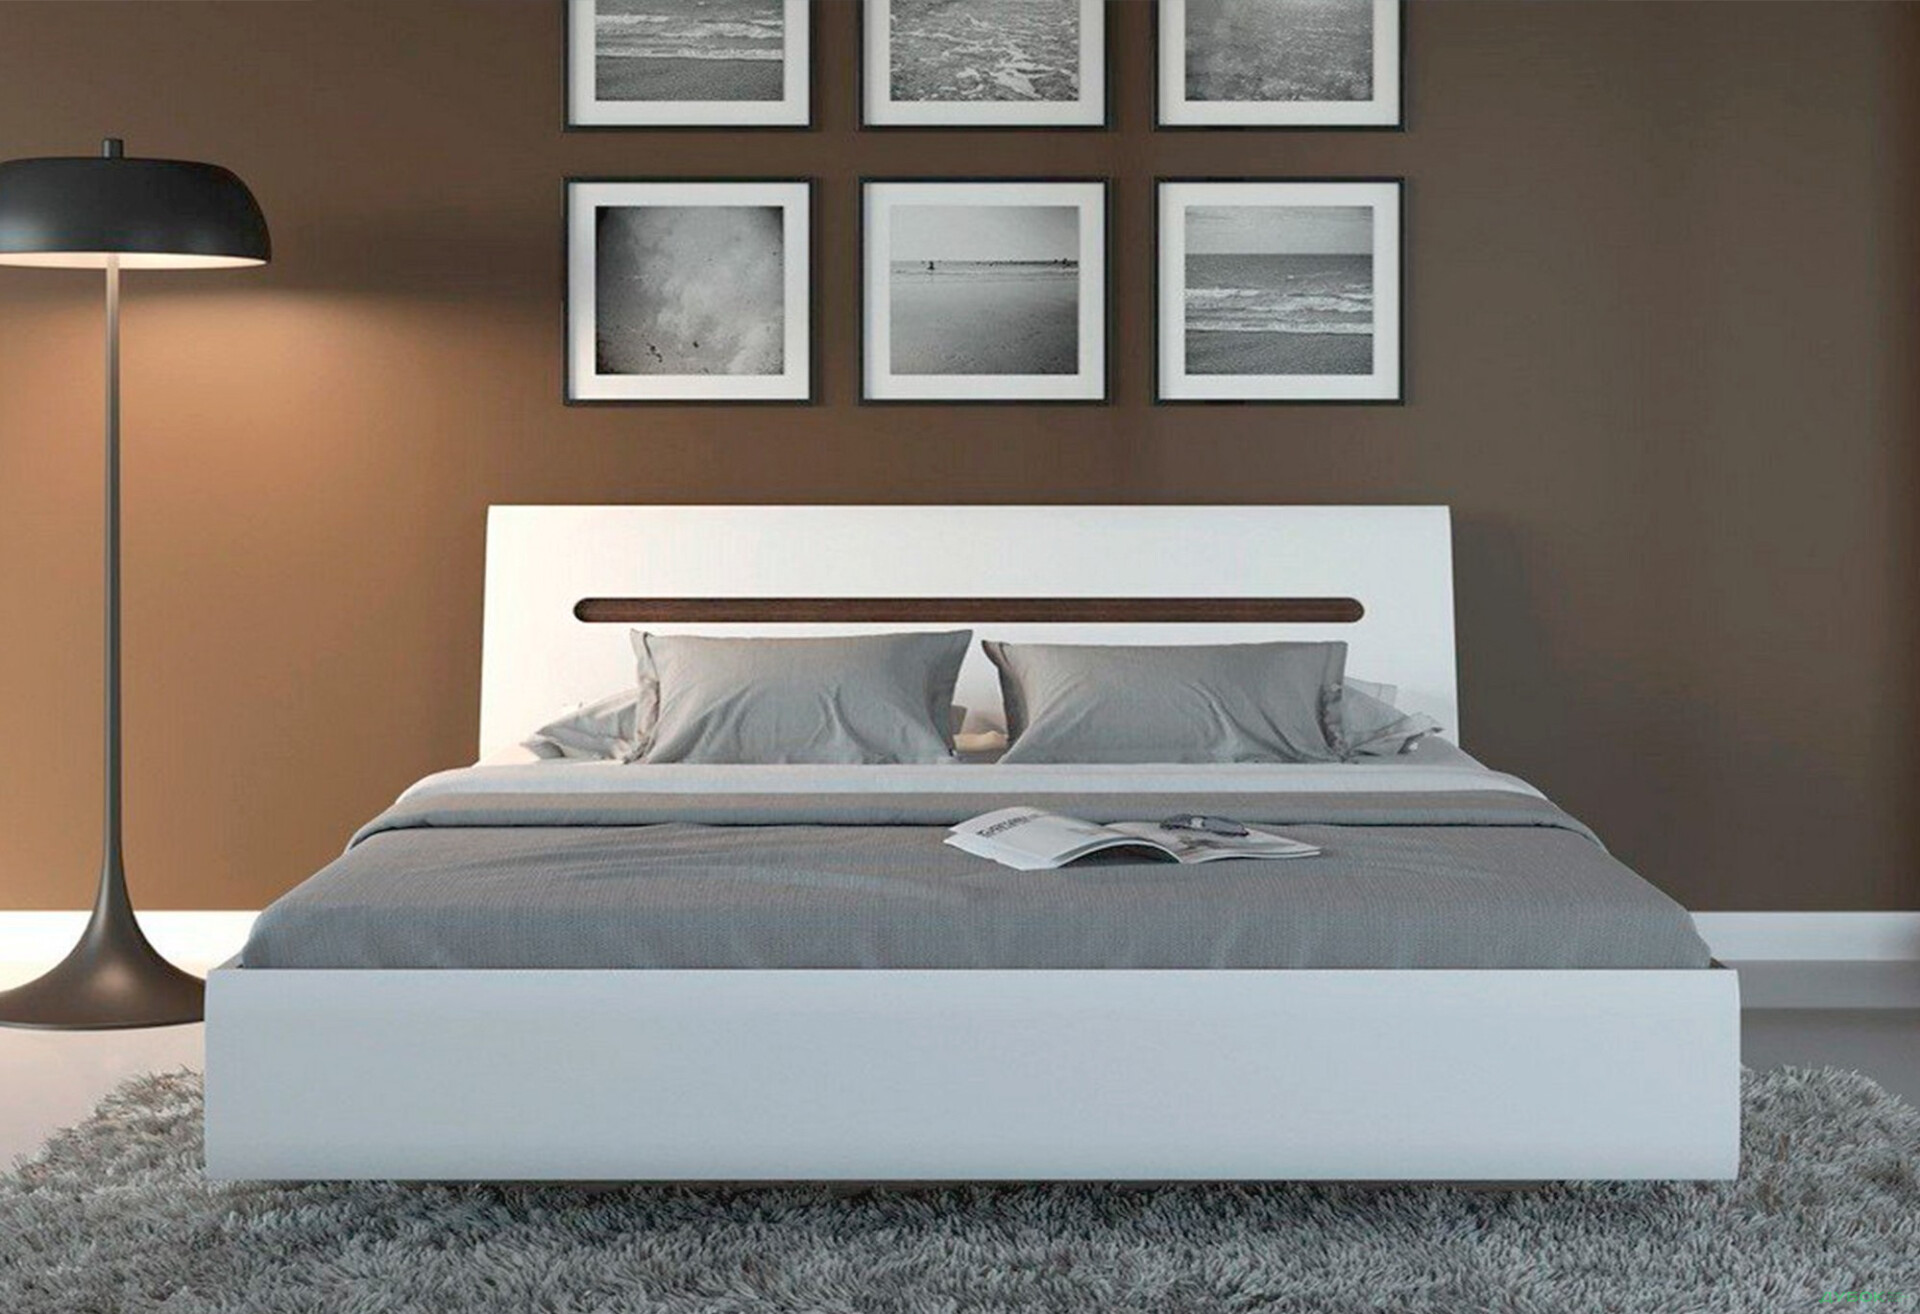 Фото 4 - Кровать ВМК Ацтека (без вклада) 180х200 см, белая